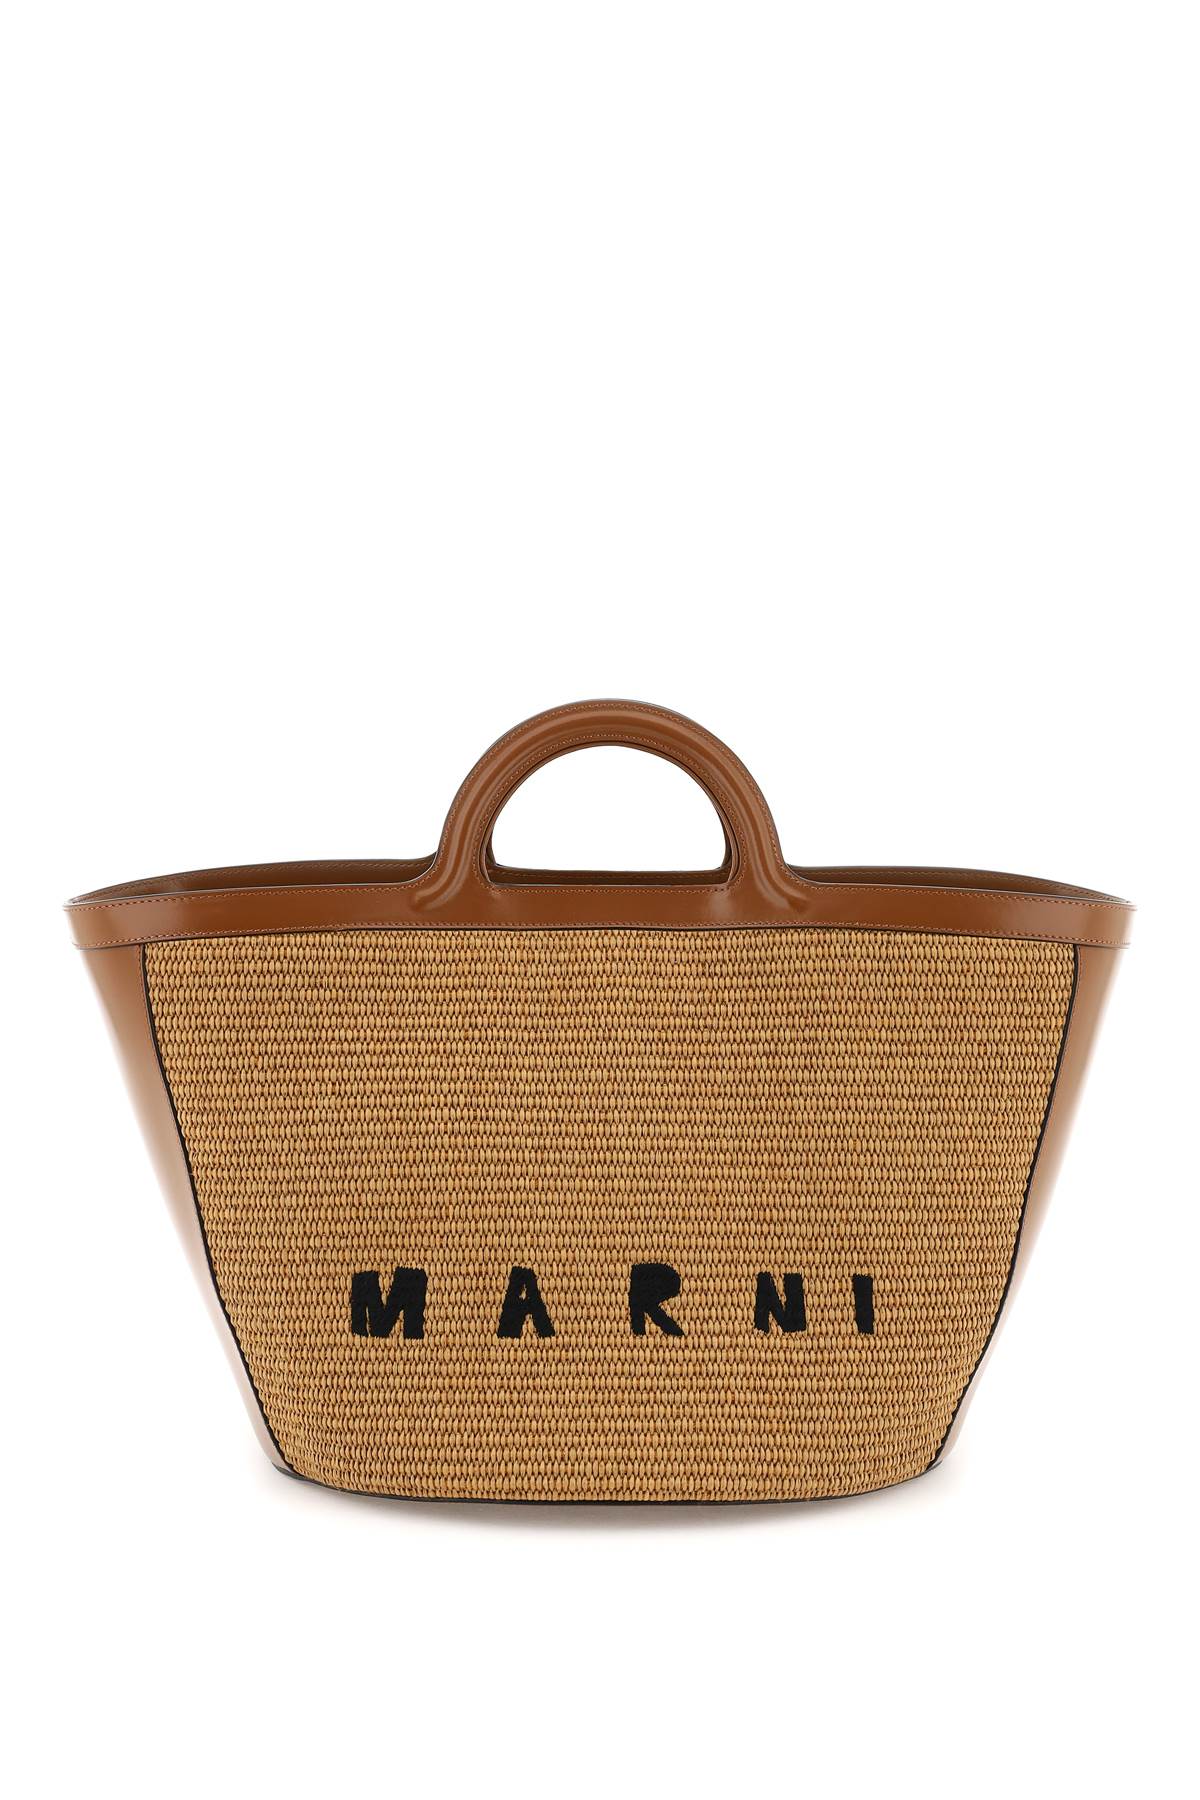 Marni Tropicalia Leather And Raffia Tote Bag